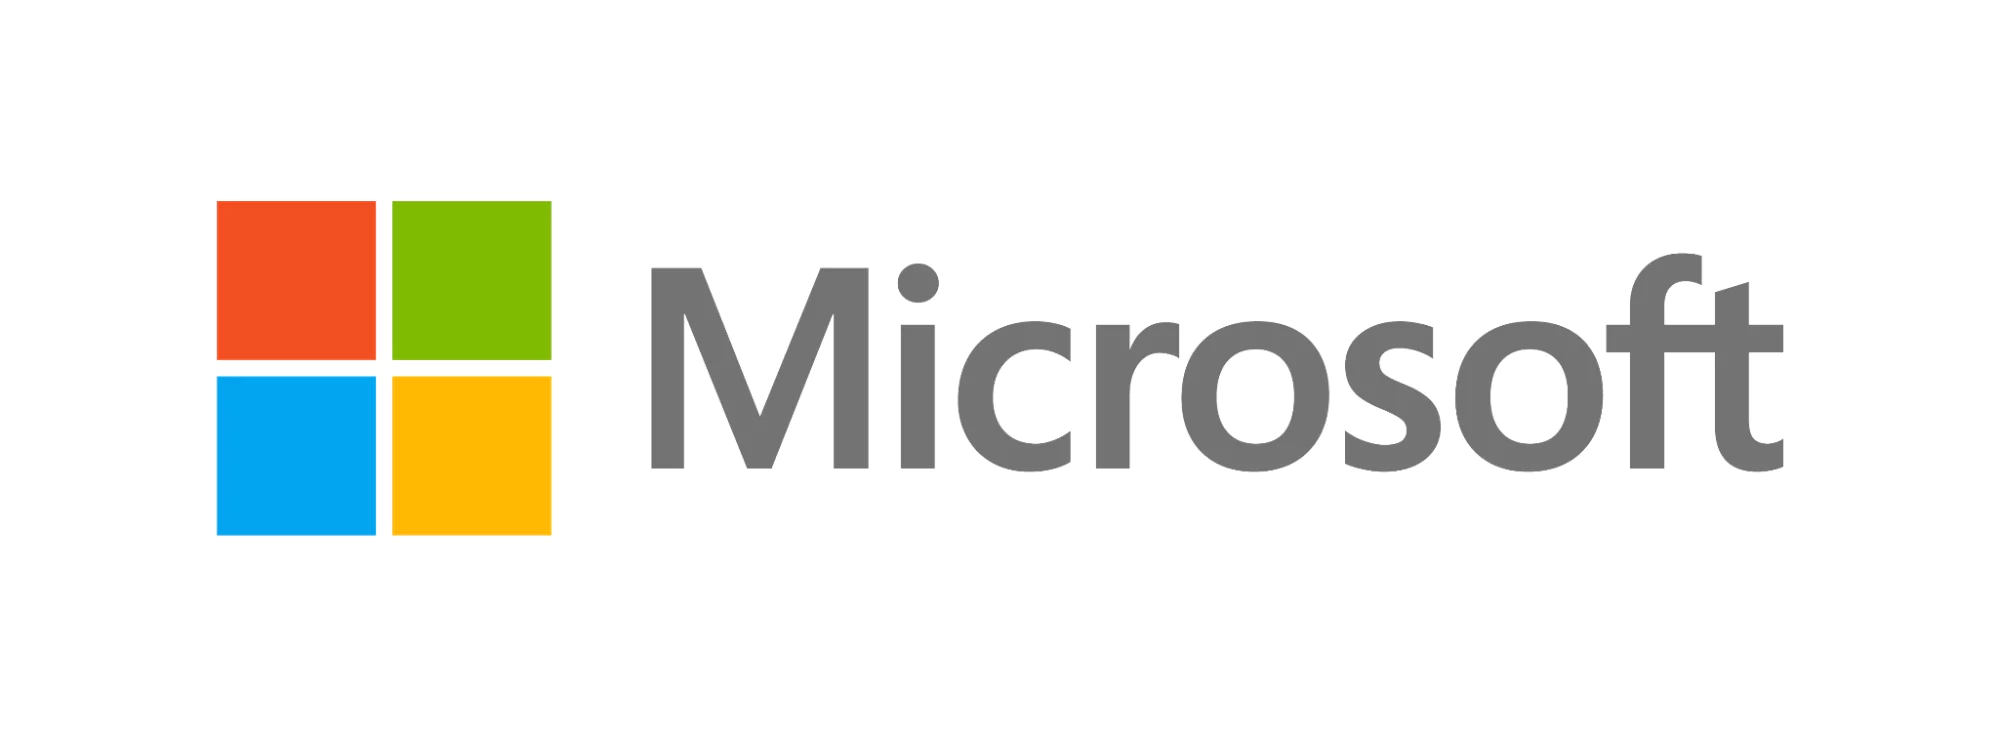 Microsoft-logotyp, ett färgat fönster med fyra rutor i blått, grönt, gult och rött